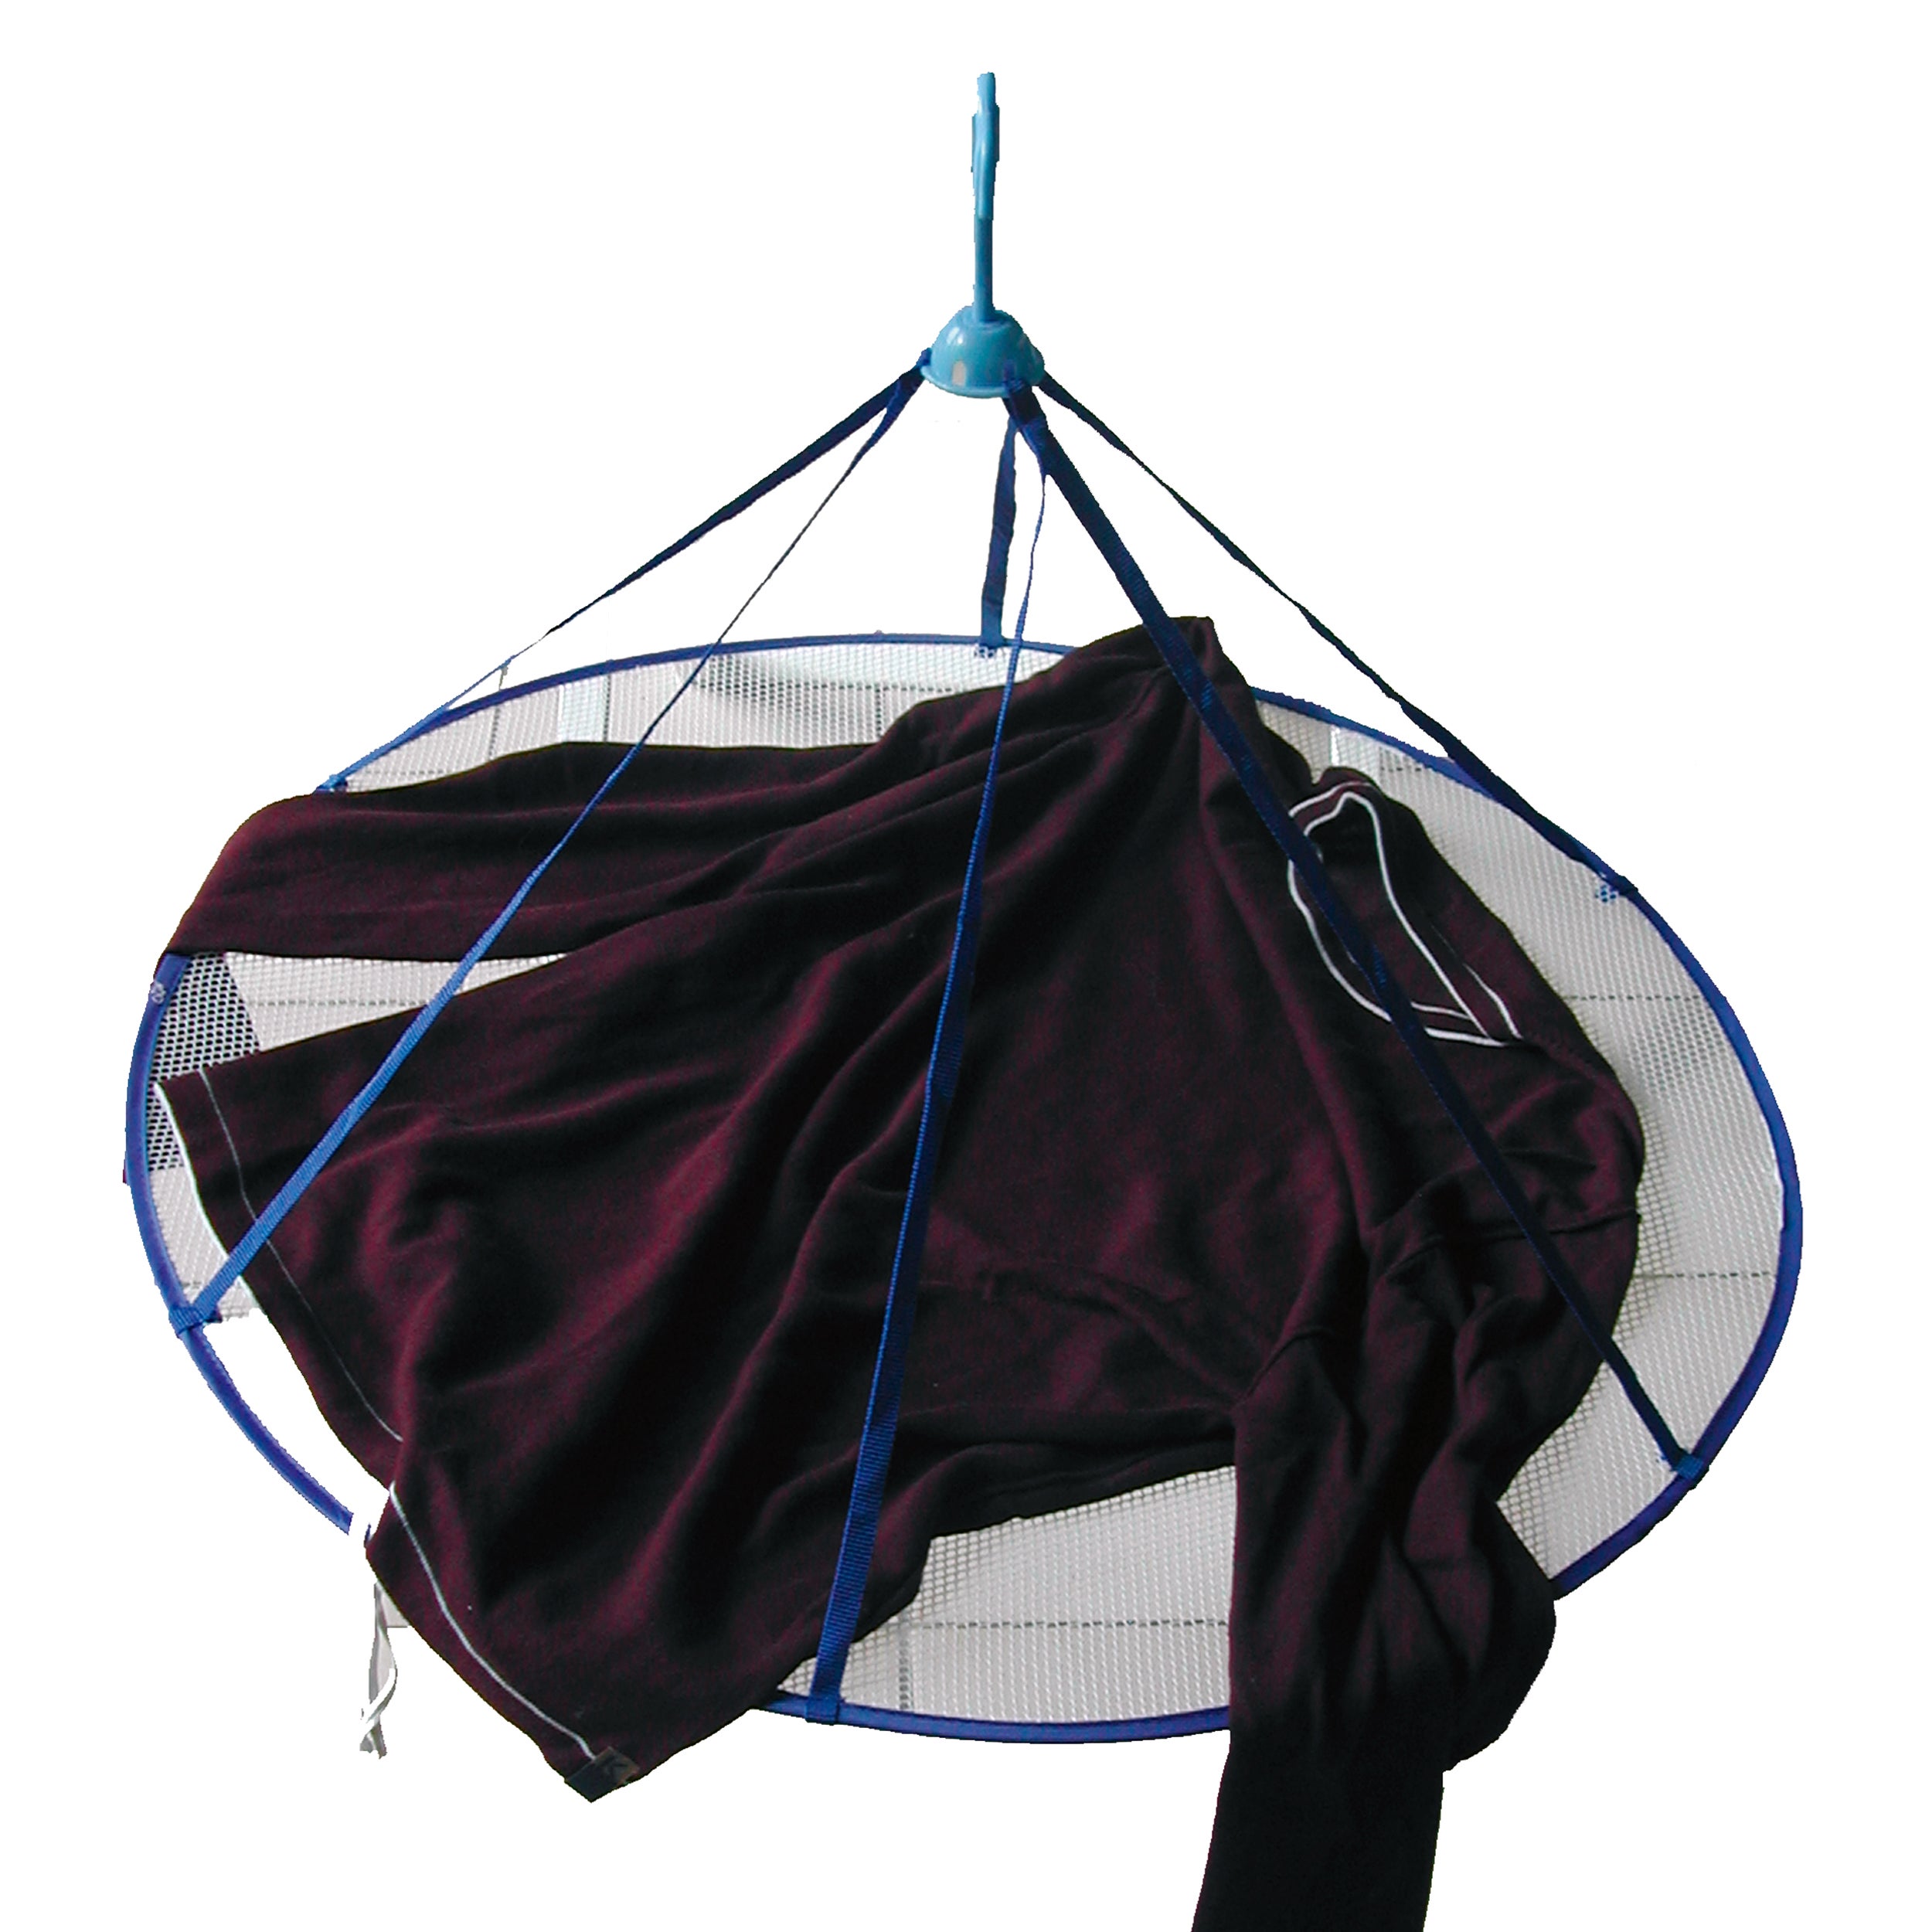 Tendedero de exterior de paraguas de 110x110 cm desplegado